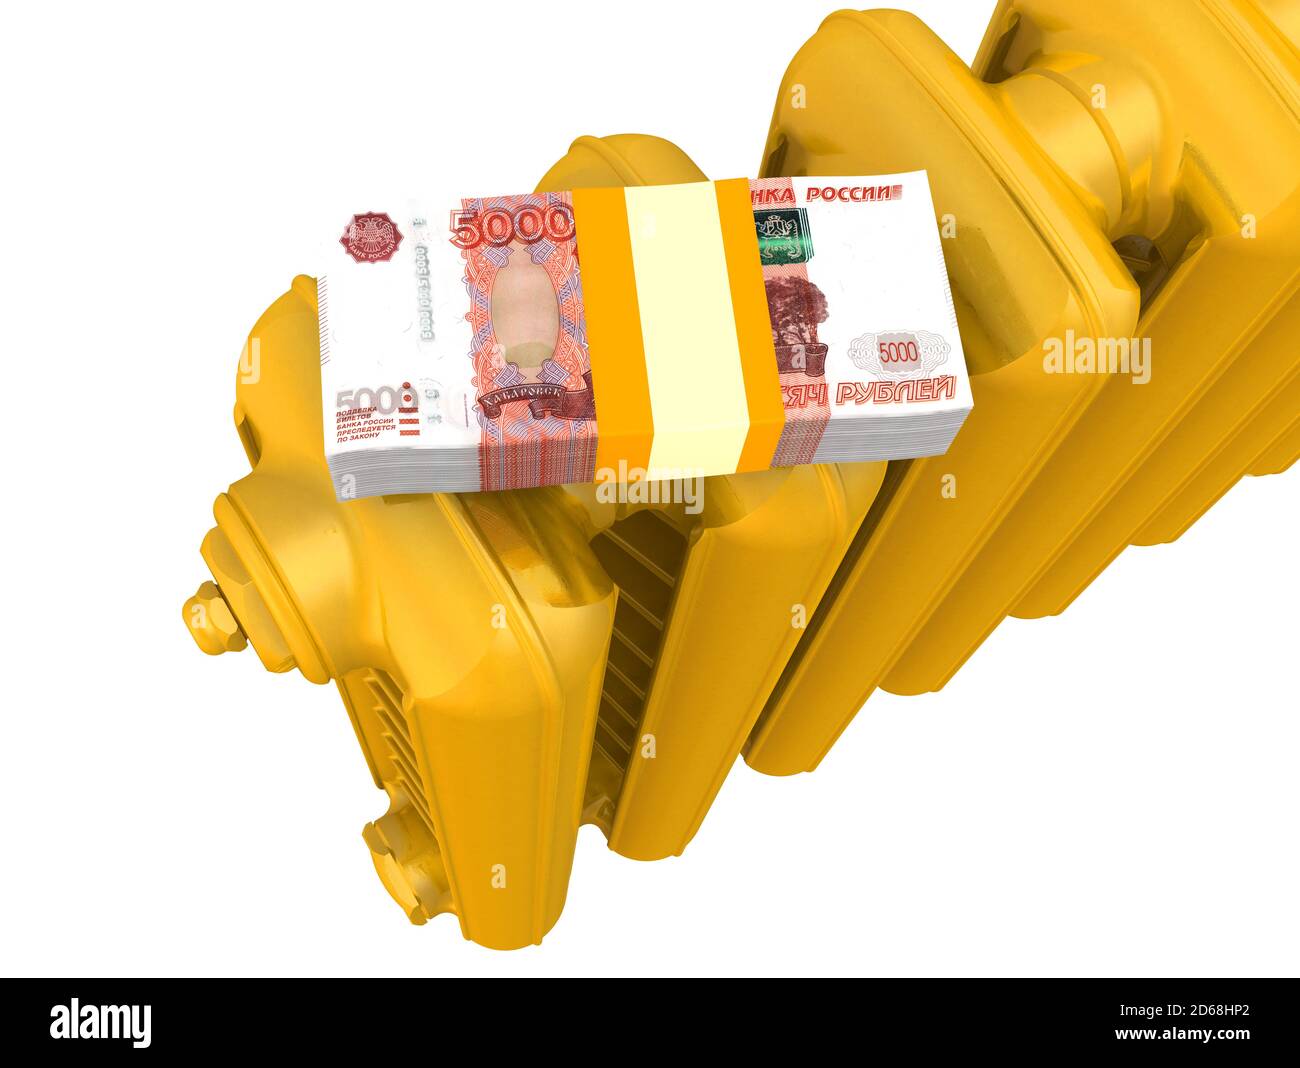 Costi di riscaldamento in rubli russi. Una sezione dorata del radiatore di riscaldamento con pacco di banconote russe (ruble) isolate su sfondo bianco Foto Stock